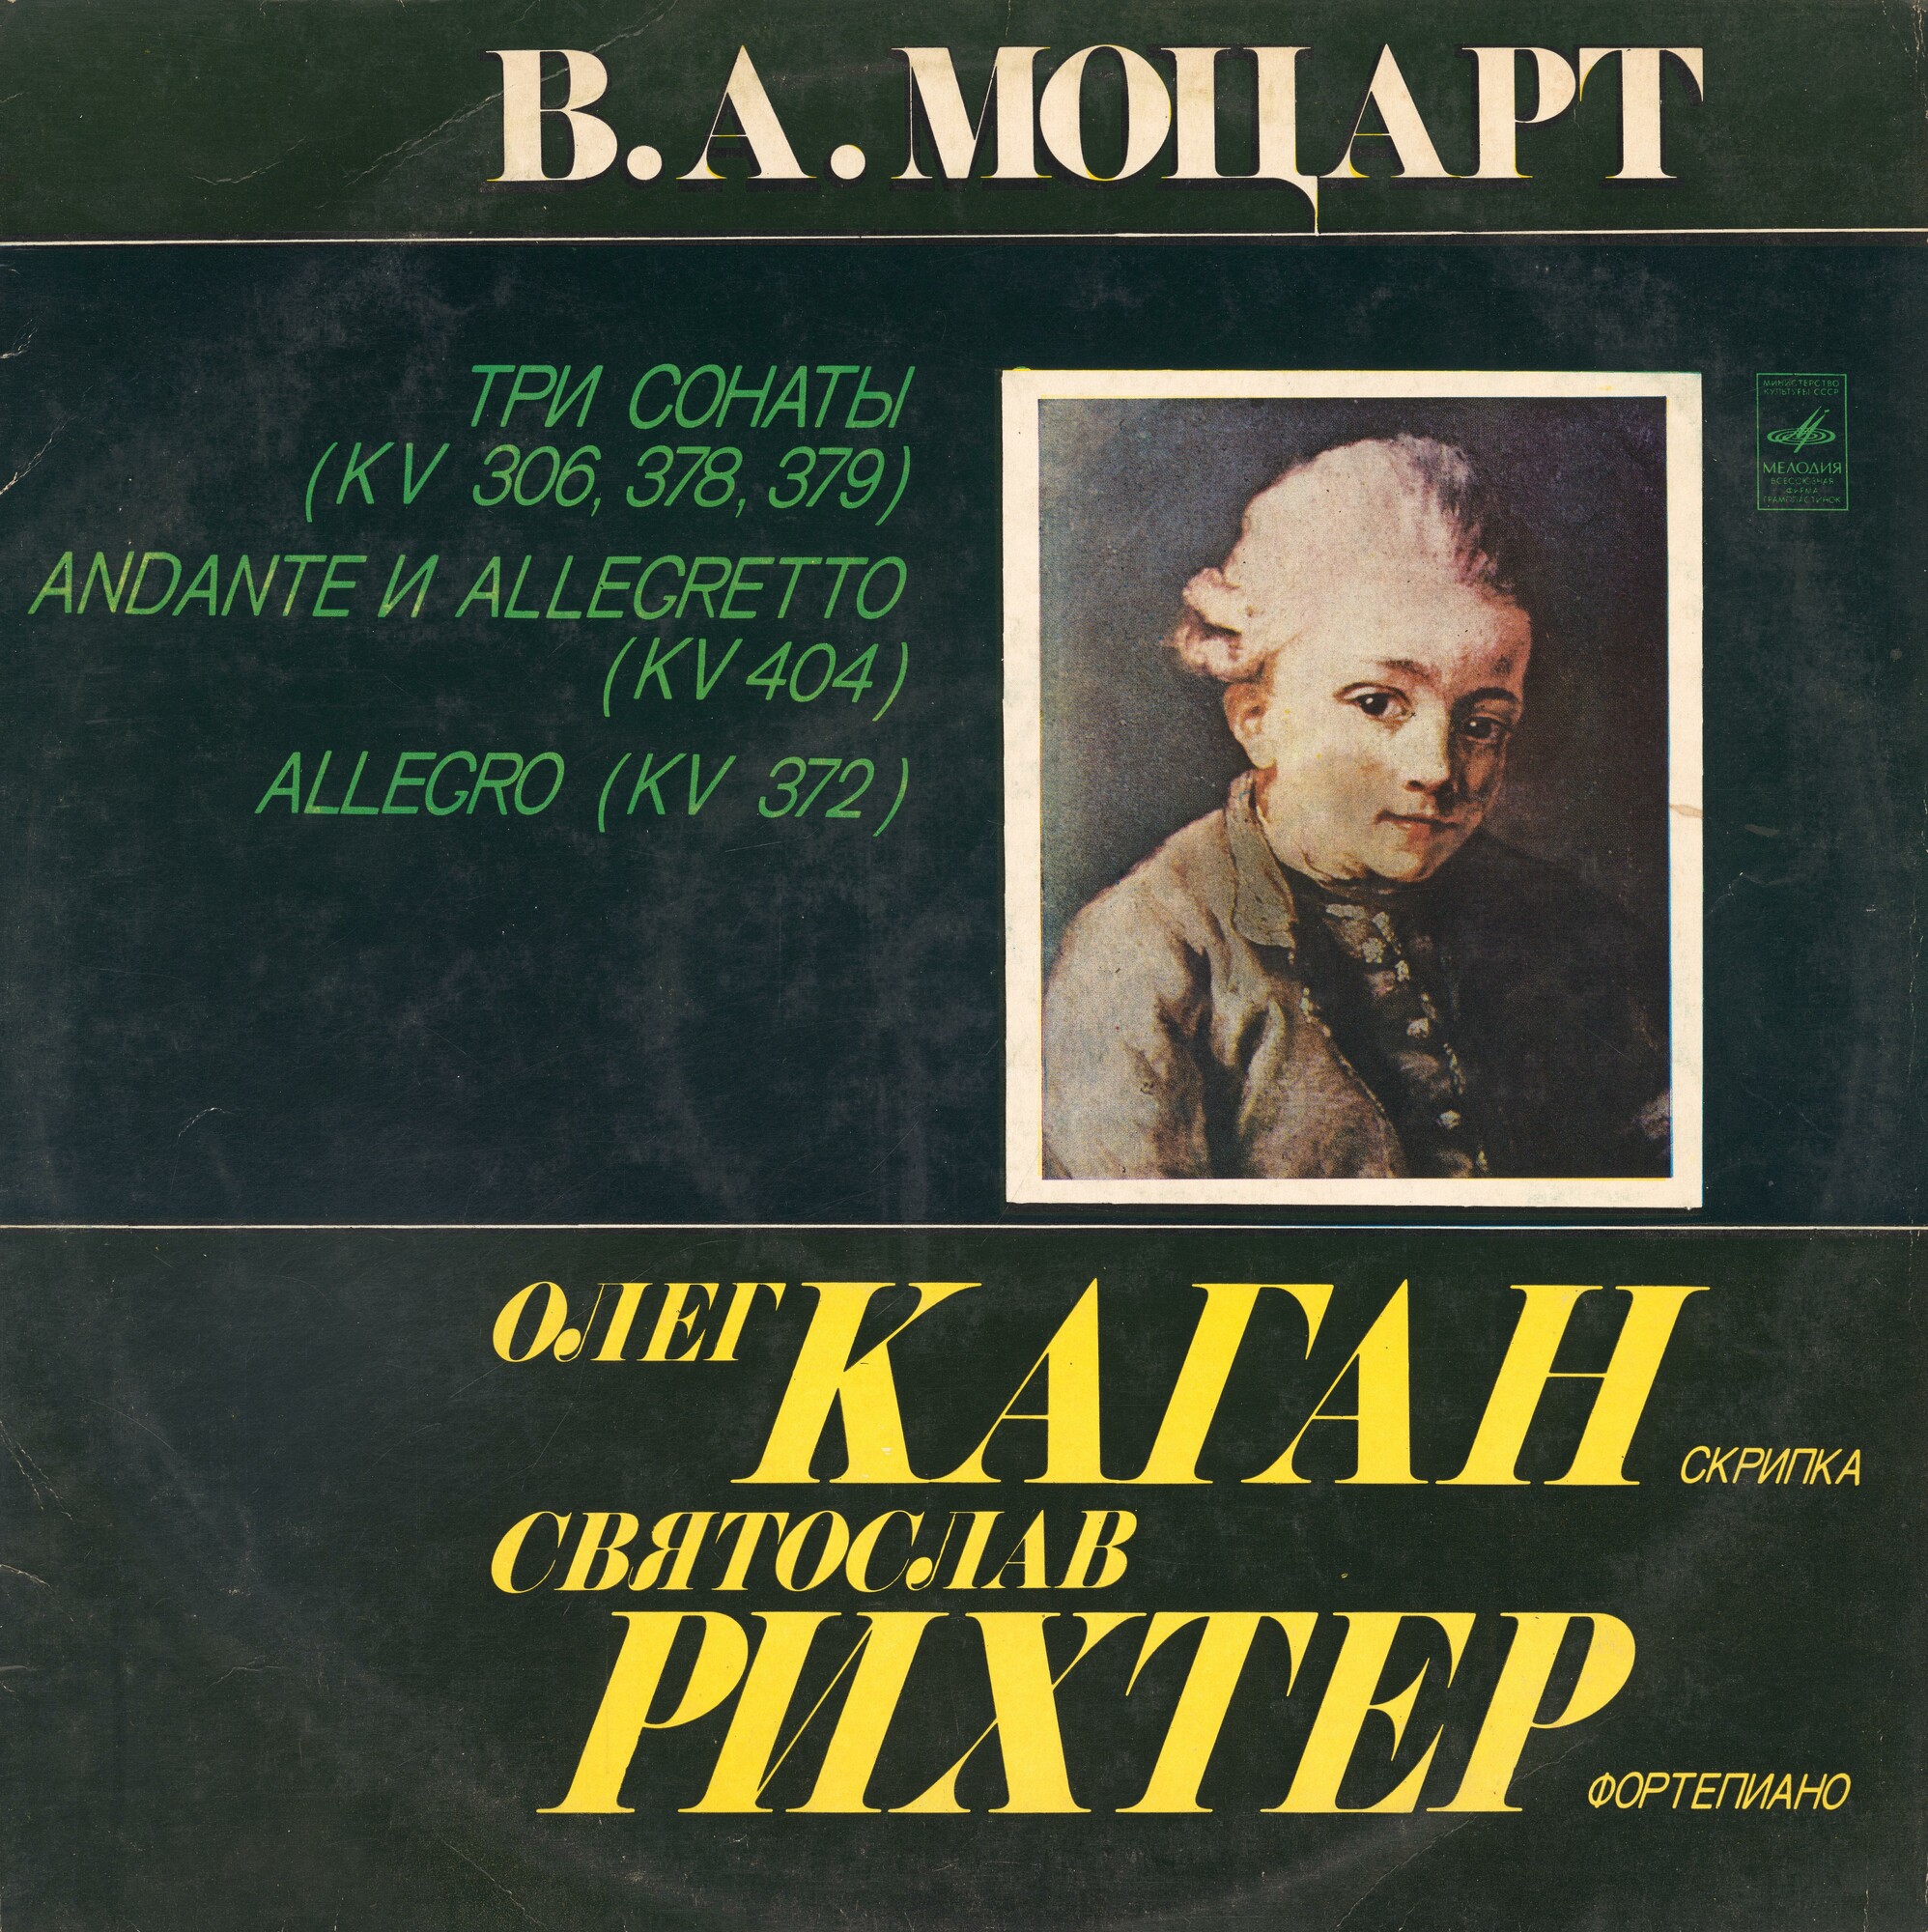 В. А. МОЦАРТ (1756-1791). Сочинения для скрипки и ф-но (О. Каган, С. Рихтер)